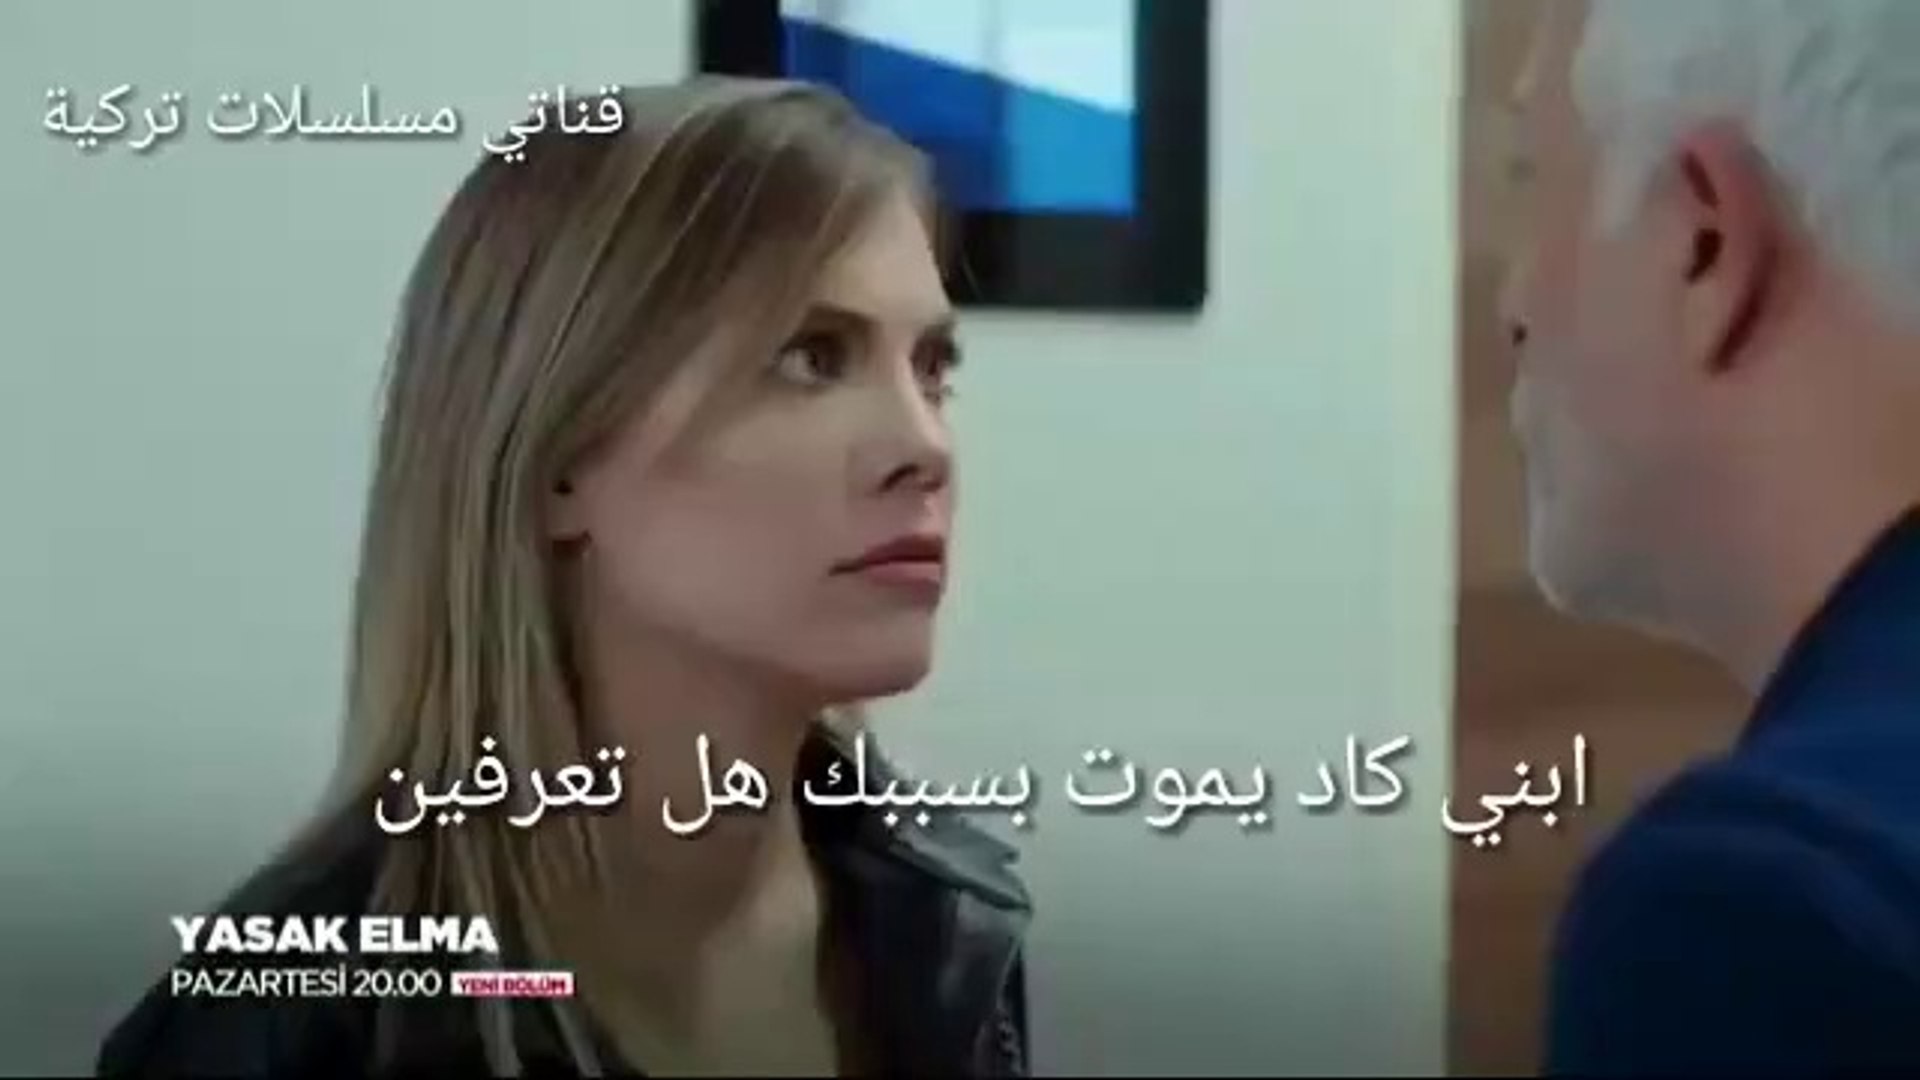 مسلسل التفاح الممنوع الحلقة 43 إعلان 1 مترجم للعربية لايك واشترك بالقناة فيديو Dailymotion